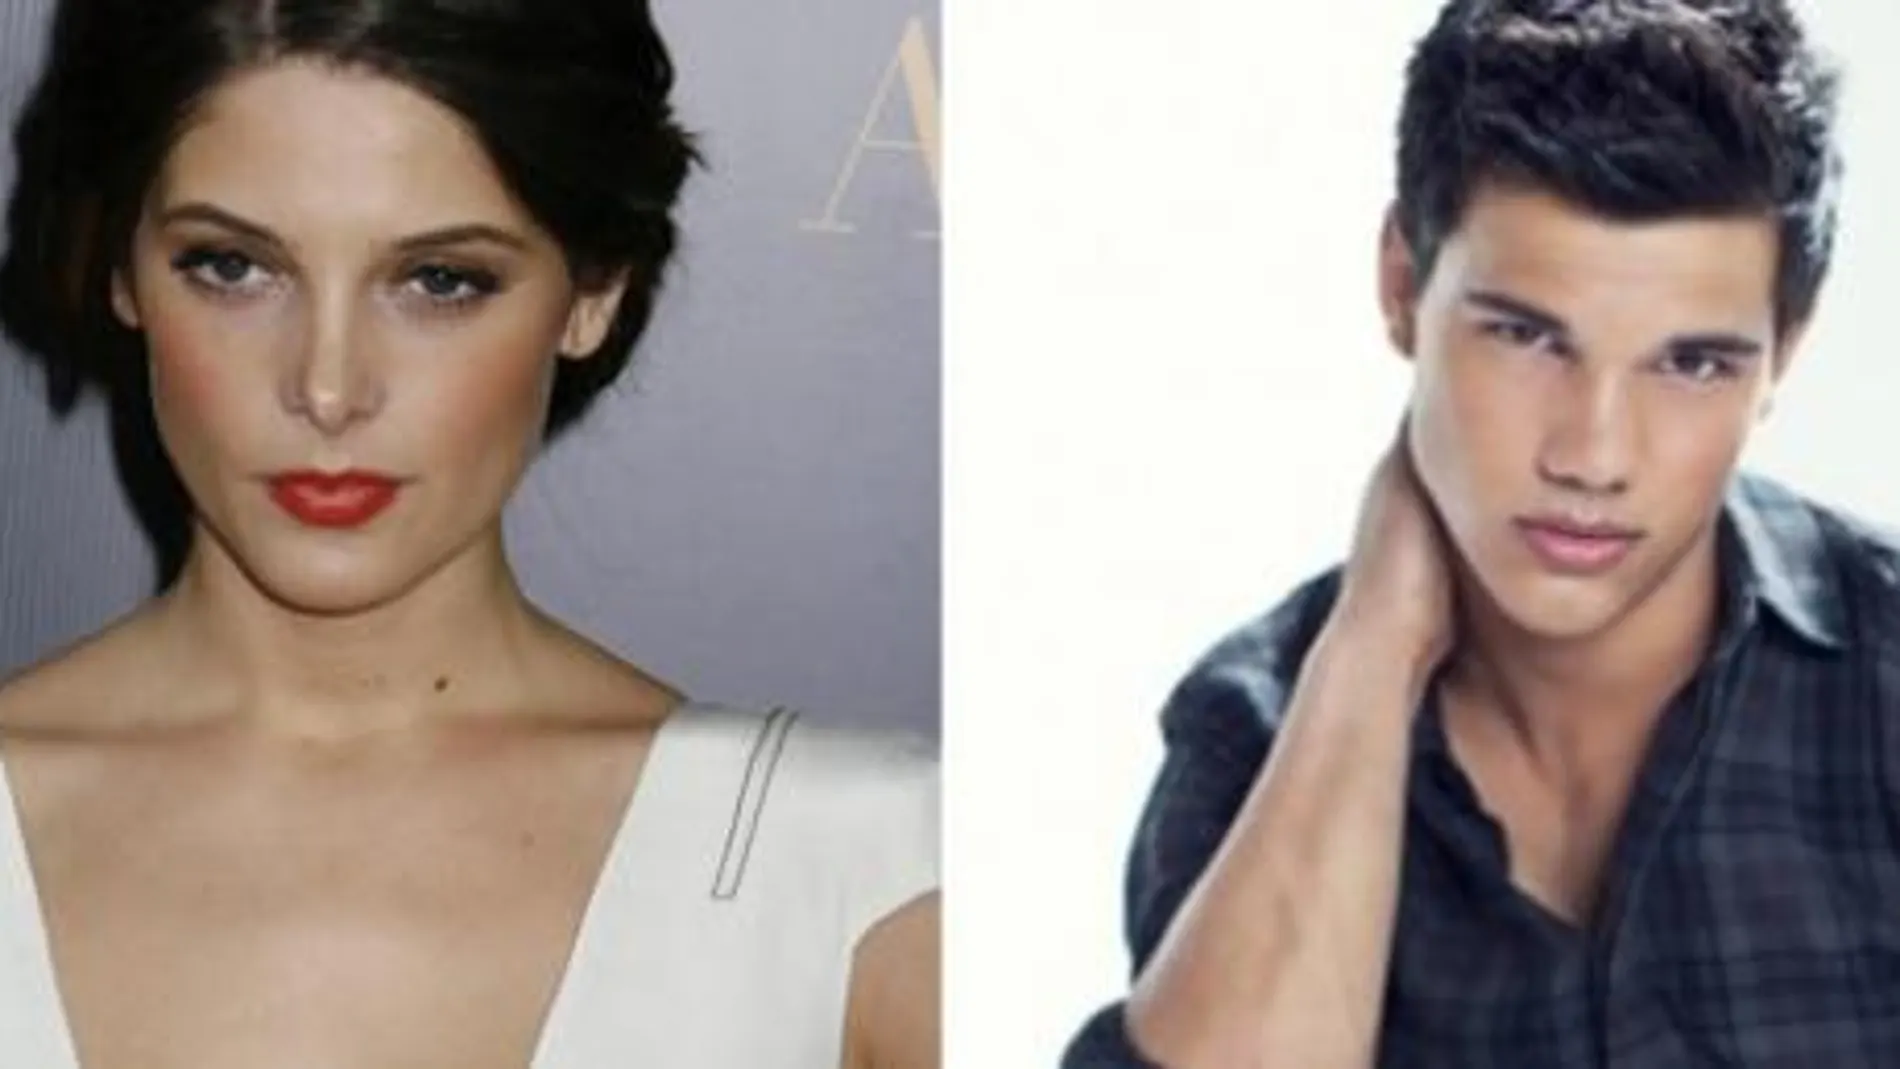 Medalla de plata para los compañeros de reparto en la saga "Crepúsculo": Ashley Greene y Taylor Lautner